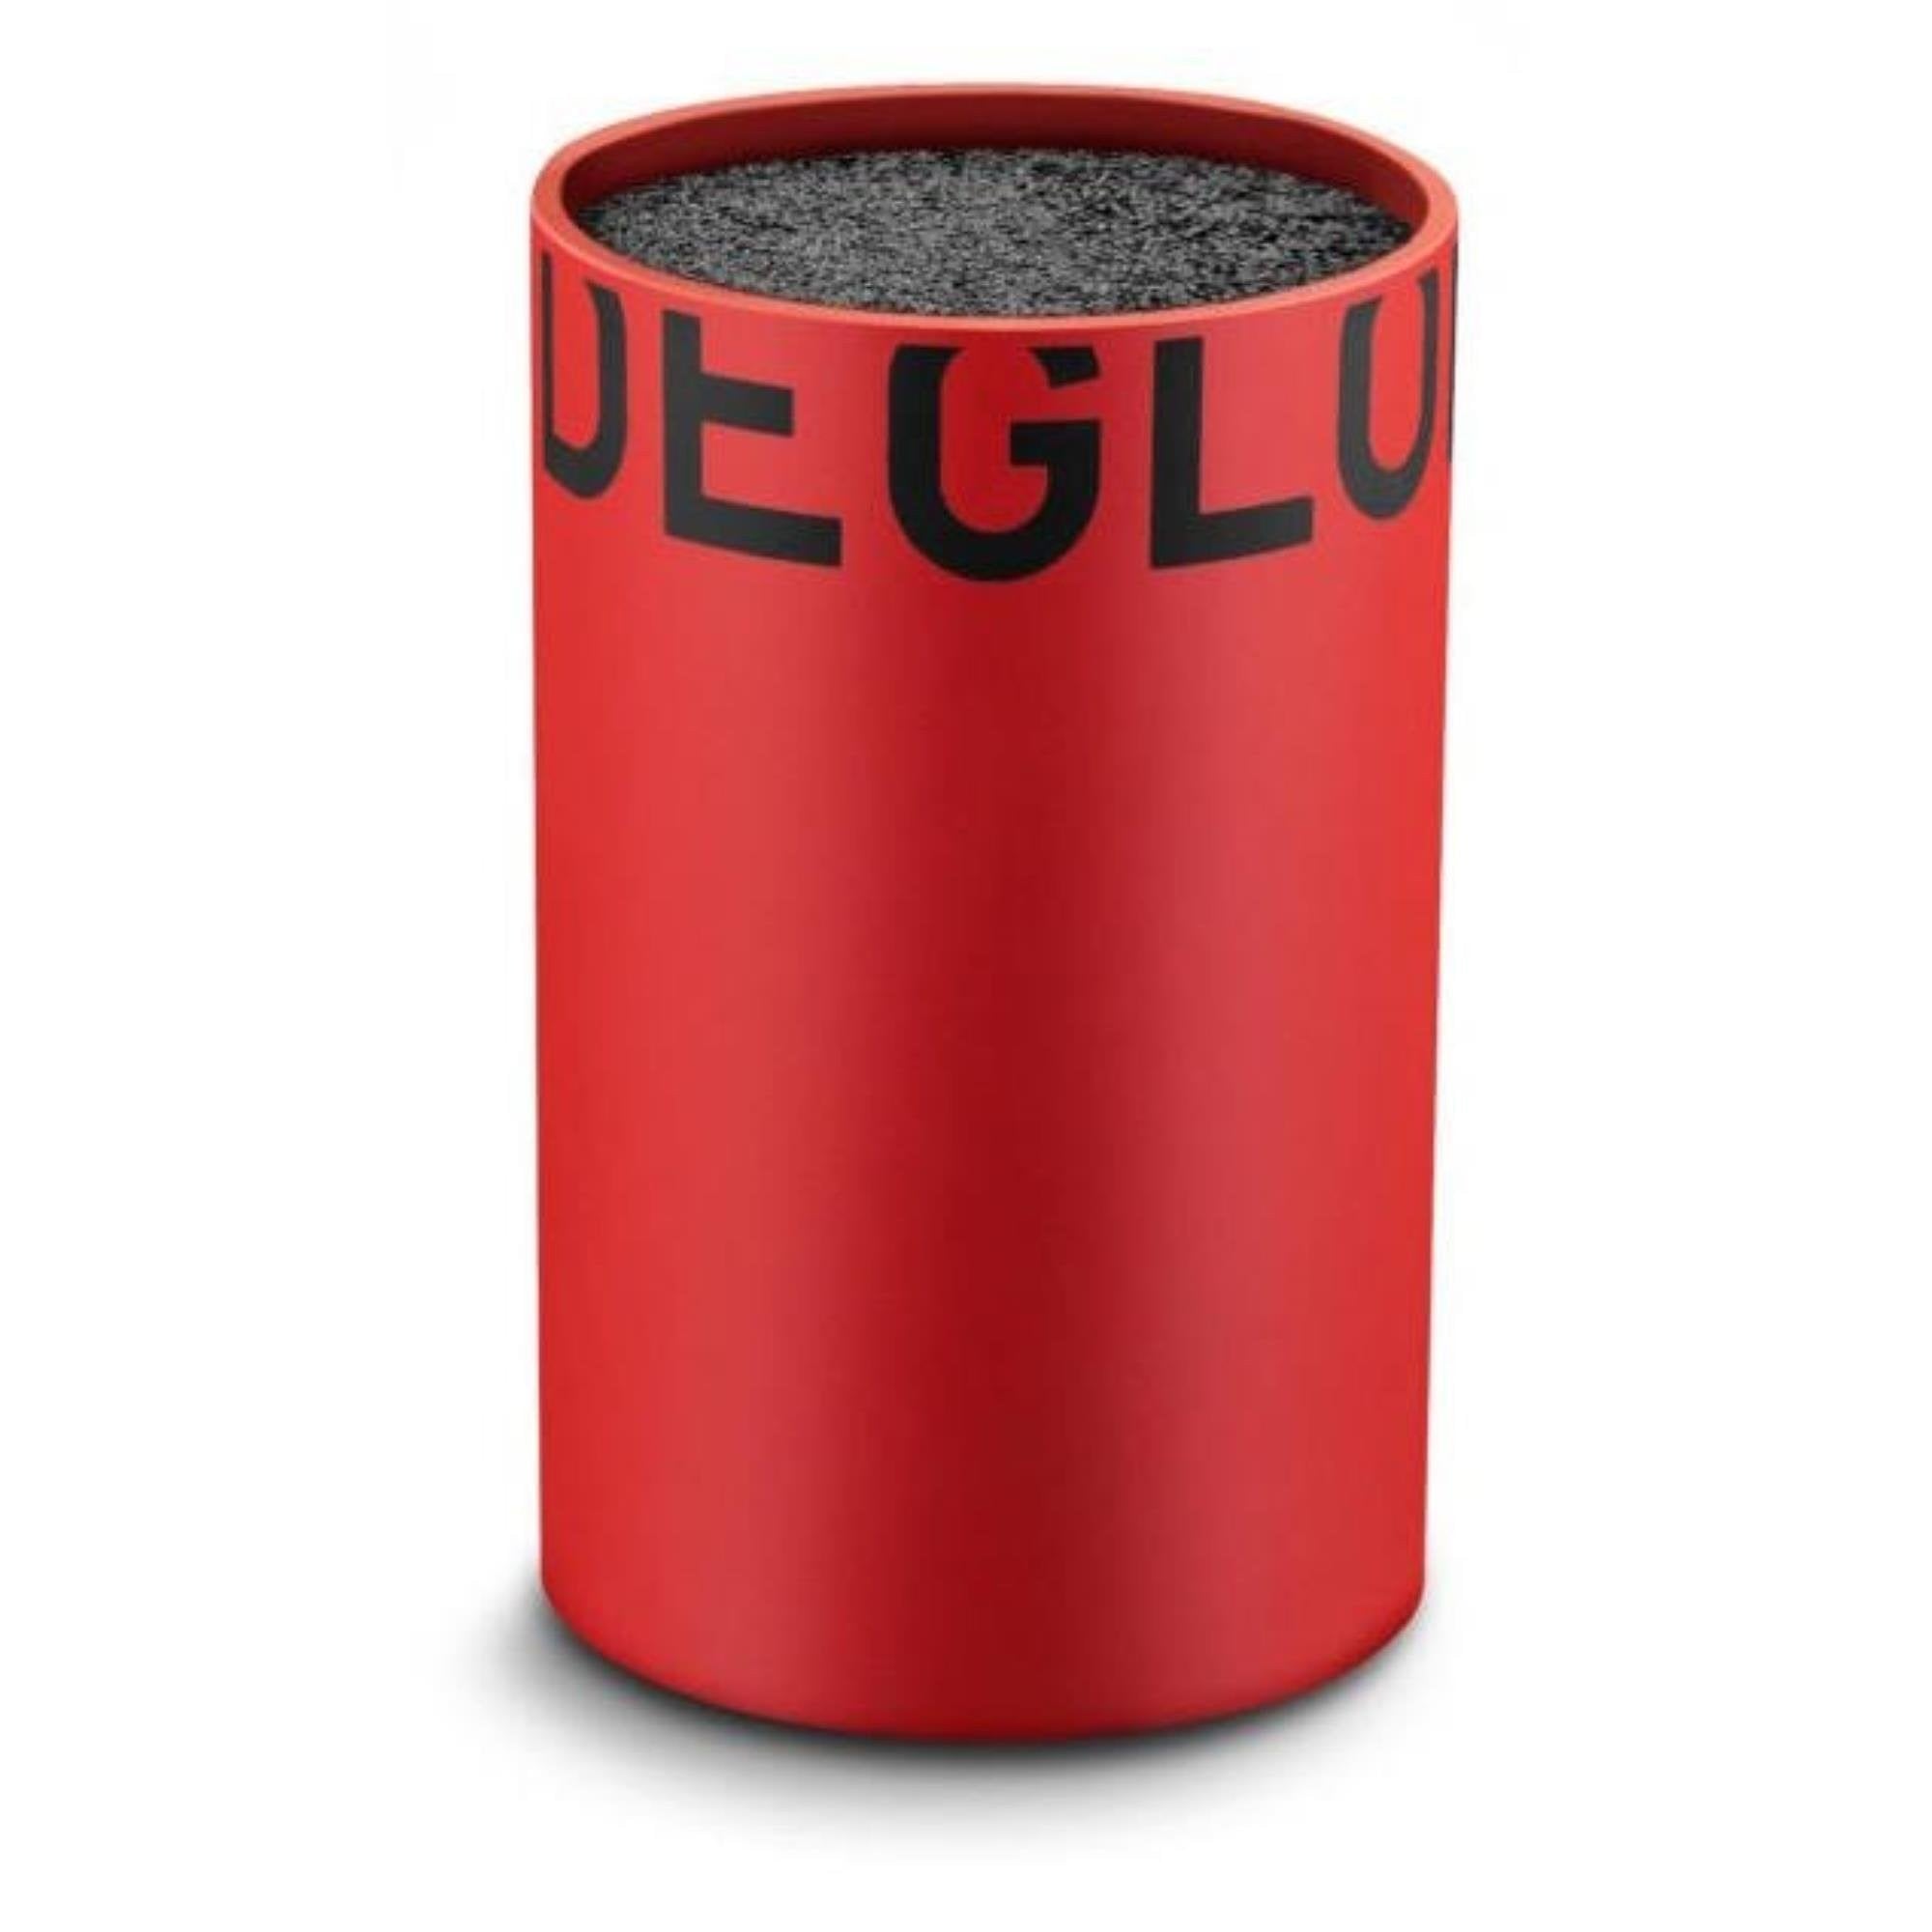 Déglon Rode Messenhouder: Klein Model voor Stijlvolle en Veilige Opberging